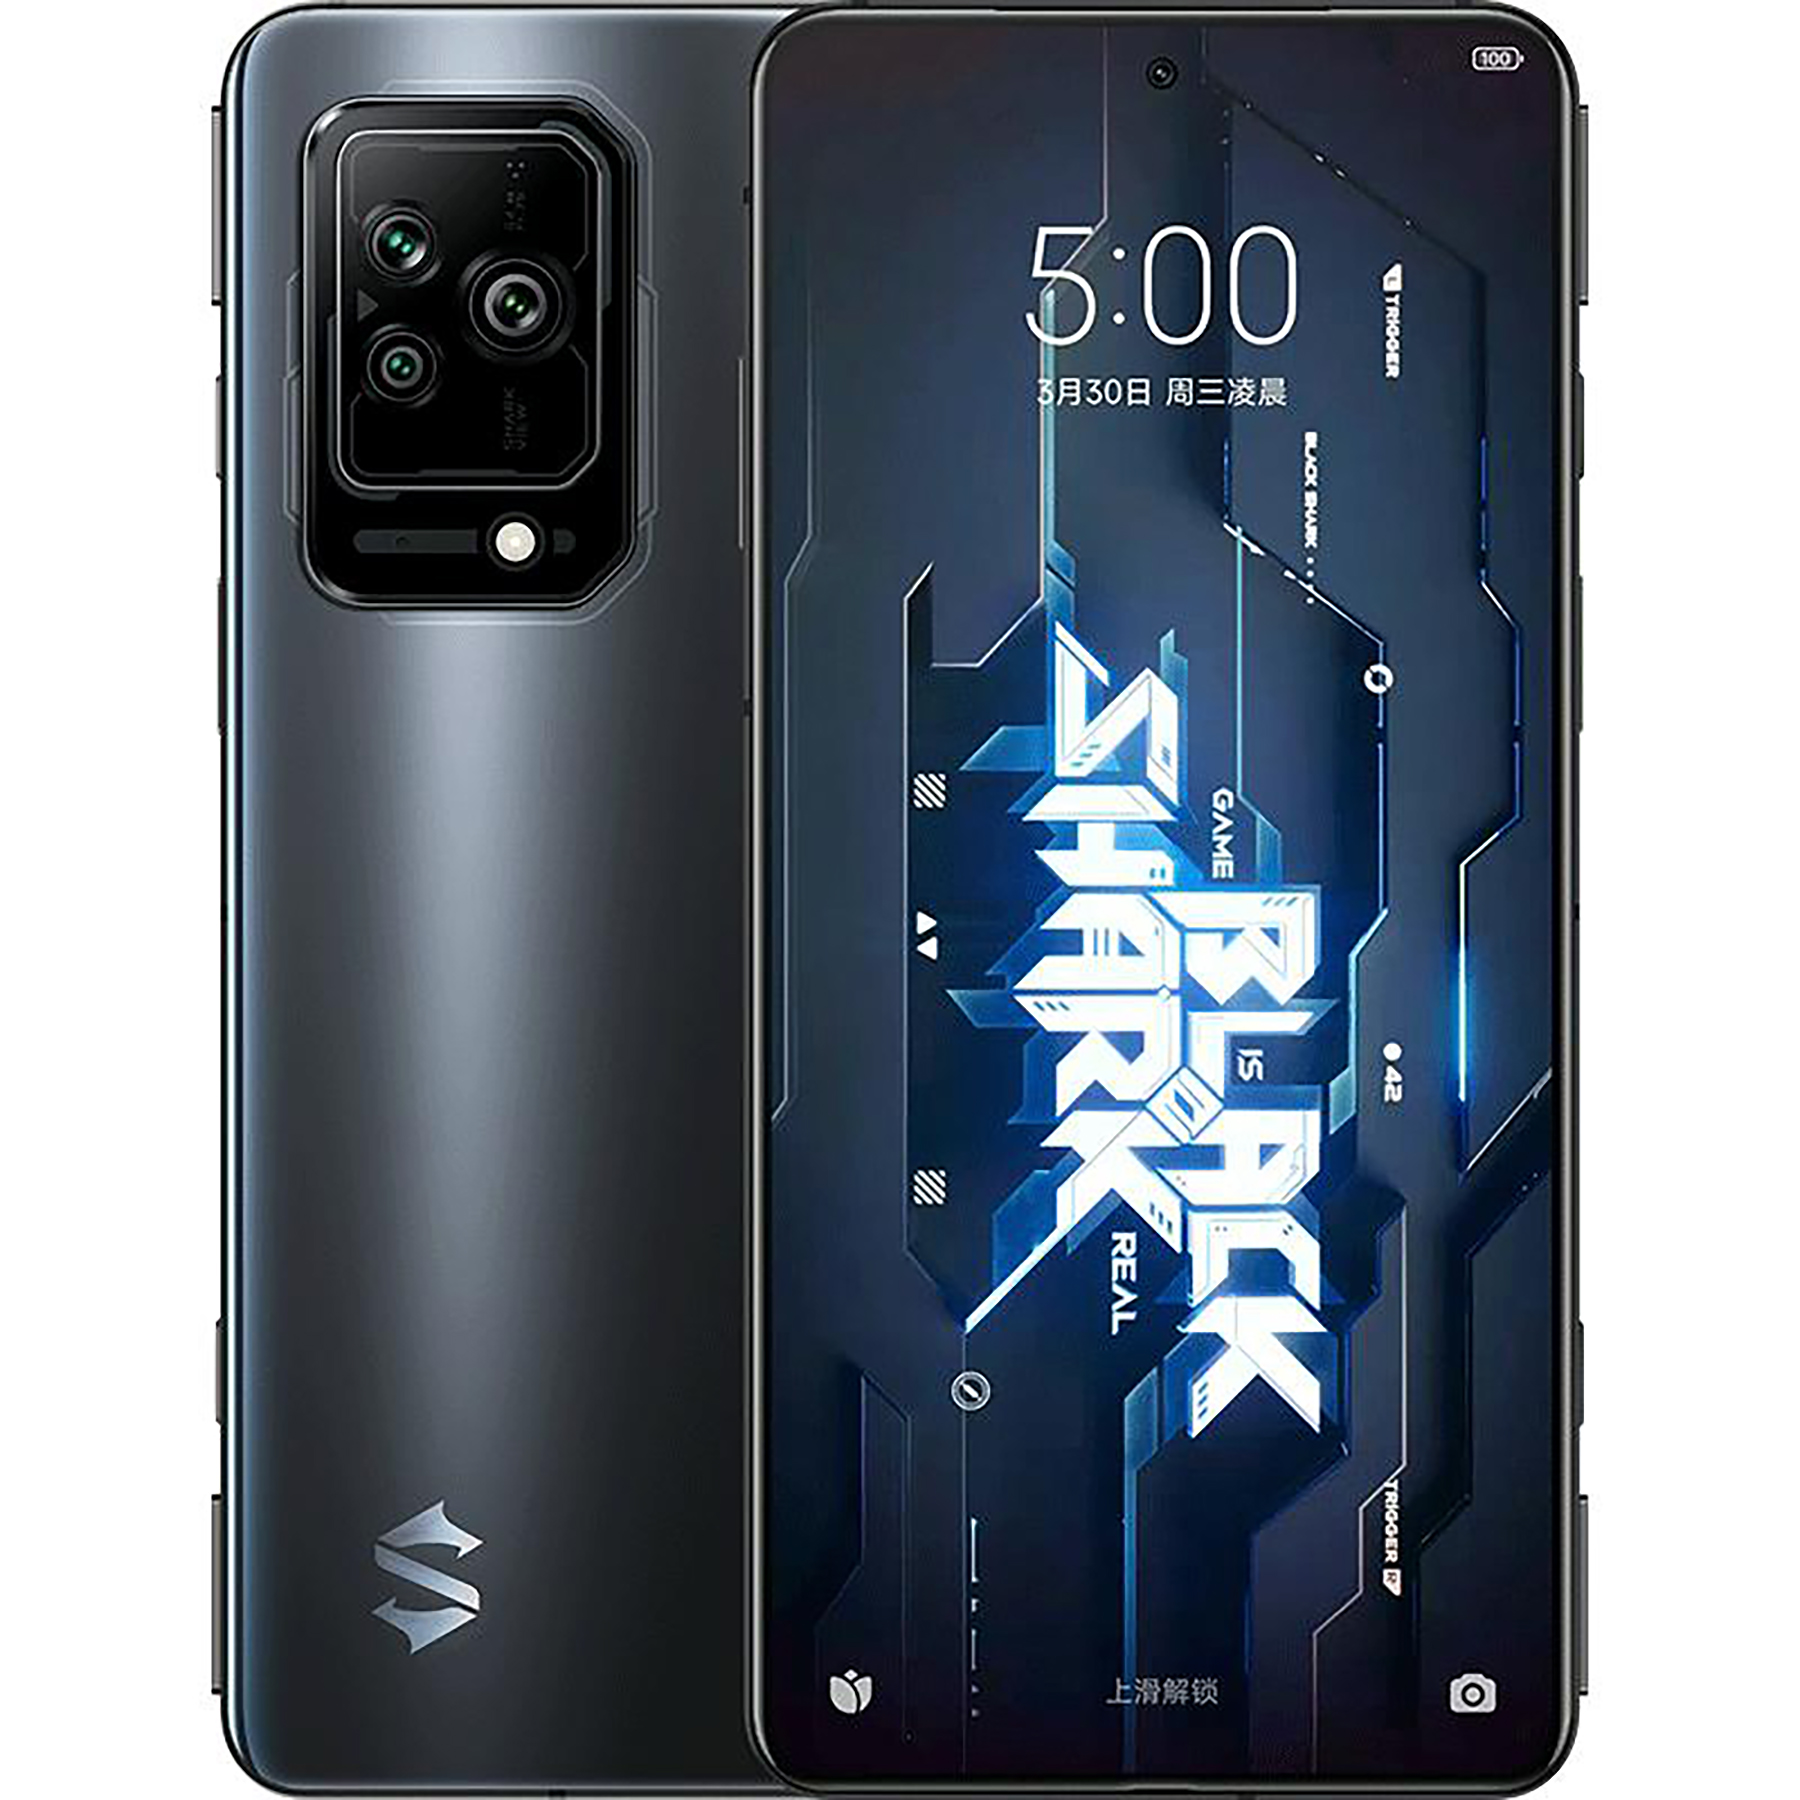 گوشی موبایل شیائومی مدل Black Shark 5 دو سیم کارت ظرفیت 128 گیگابایت و رم 8 گیگابایت 